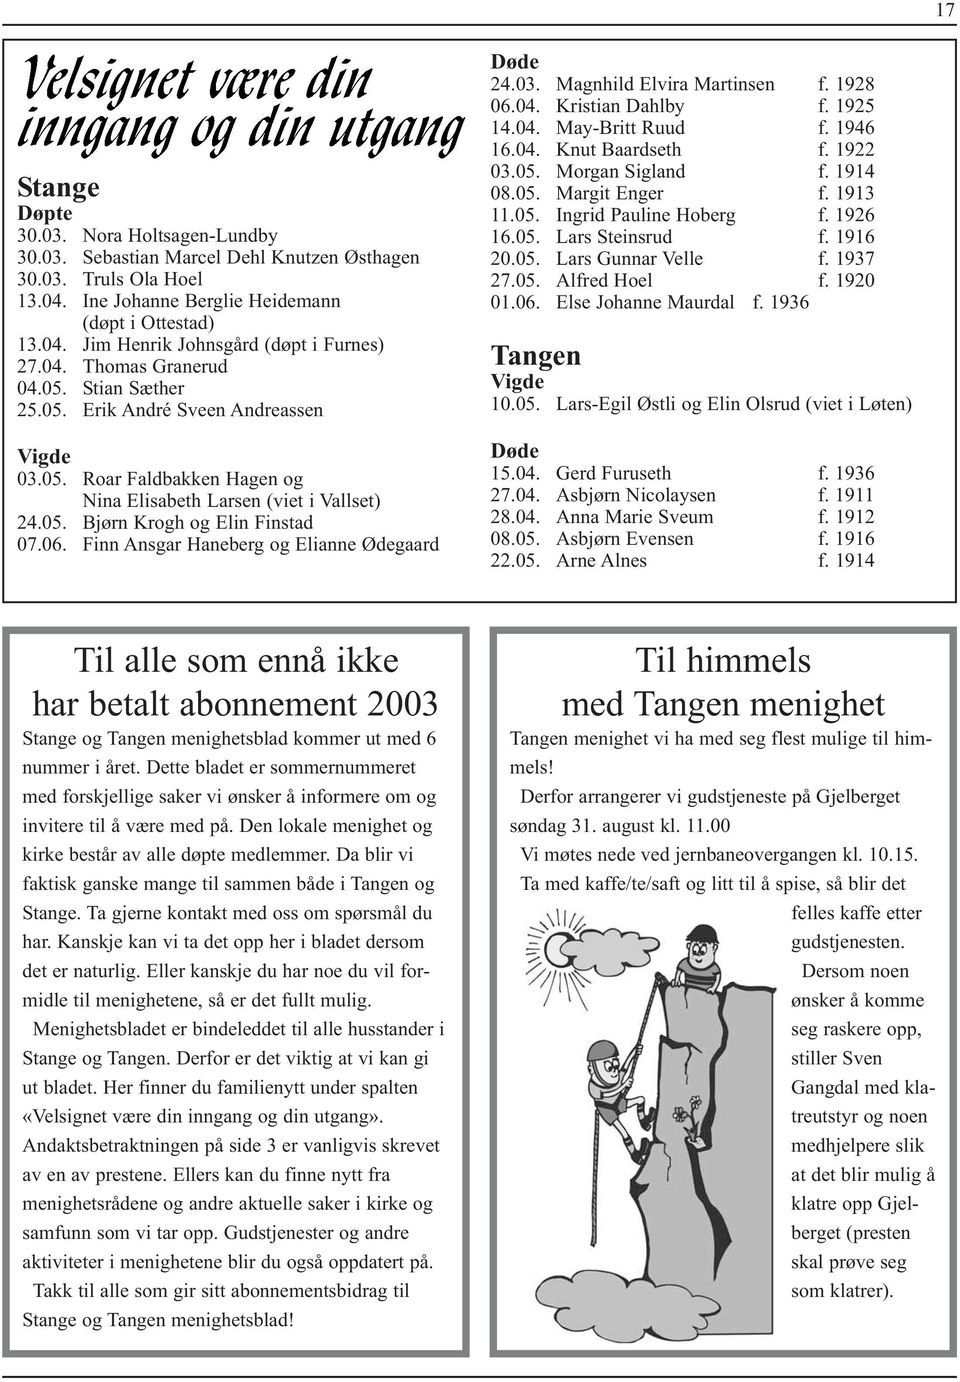 Finn Ansgar Haneberg og Elianne Ødegaard Døde 24.03. Magnhild Elvira Martinsen f. 1928 06.04. Kristian Dahlby f. 1925 14.04. May-Britt Ruud f. 1946 16.04. Knut Baardseth f. 1922 03.05.